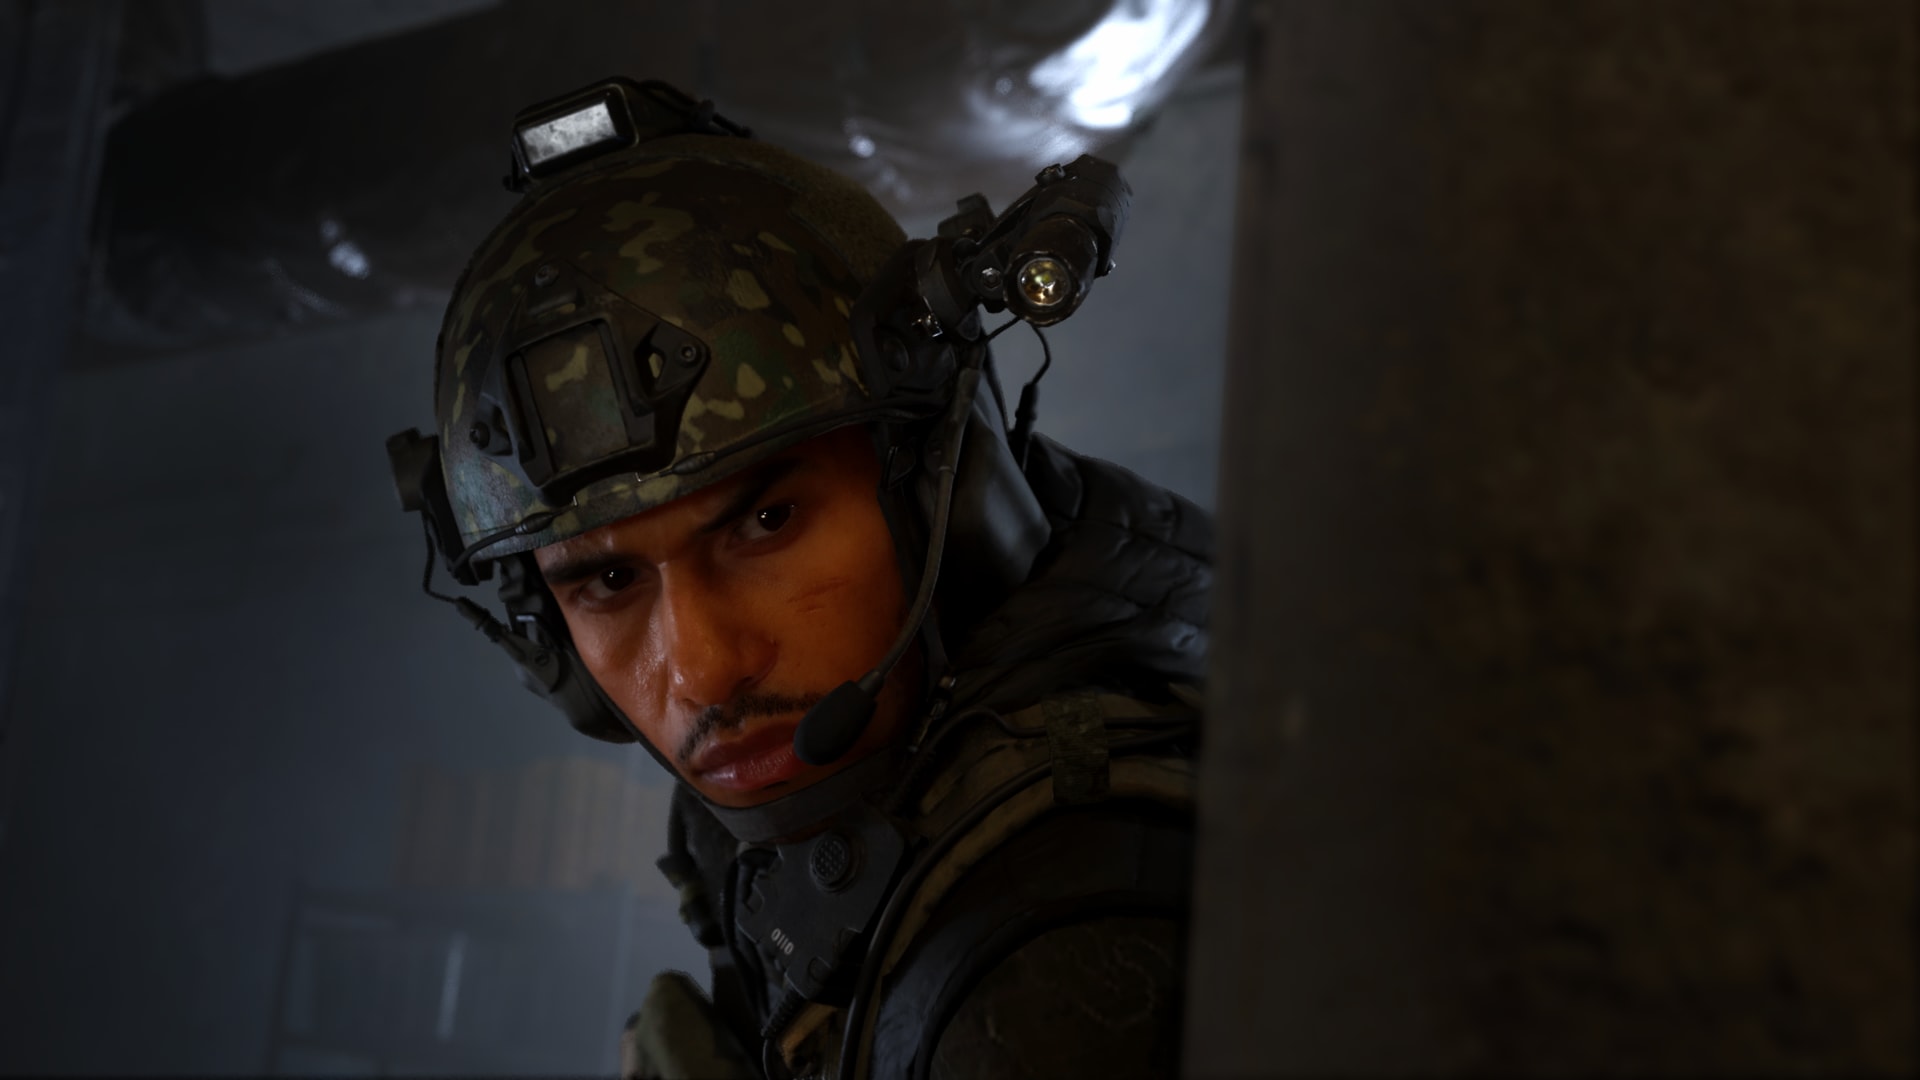 Call of Duty Modern Warfare 3: 'Call of Duty: Modern Warfare 3